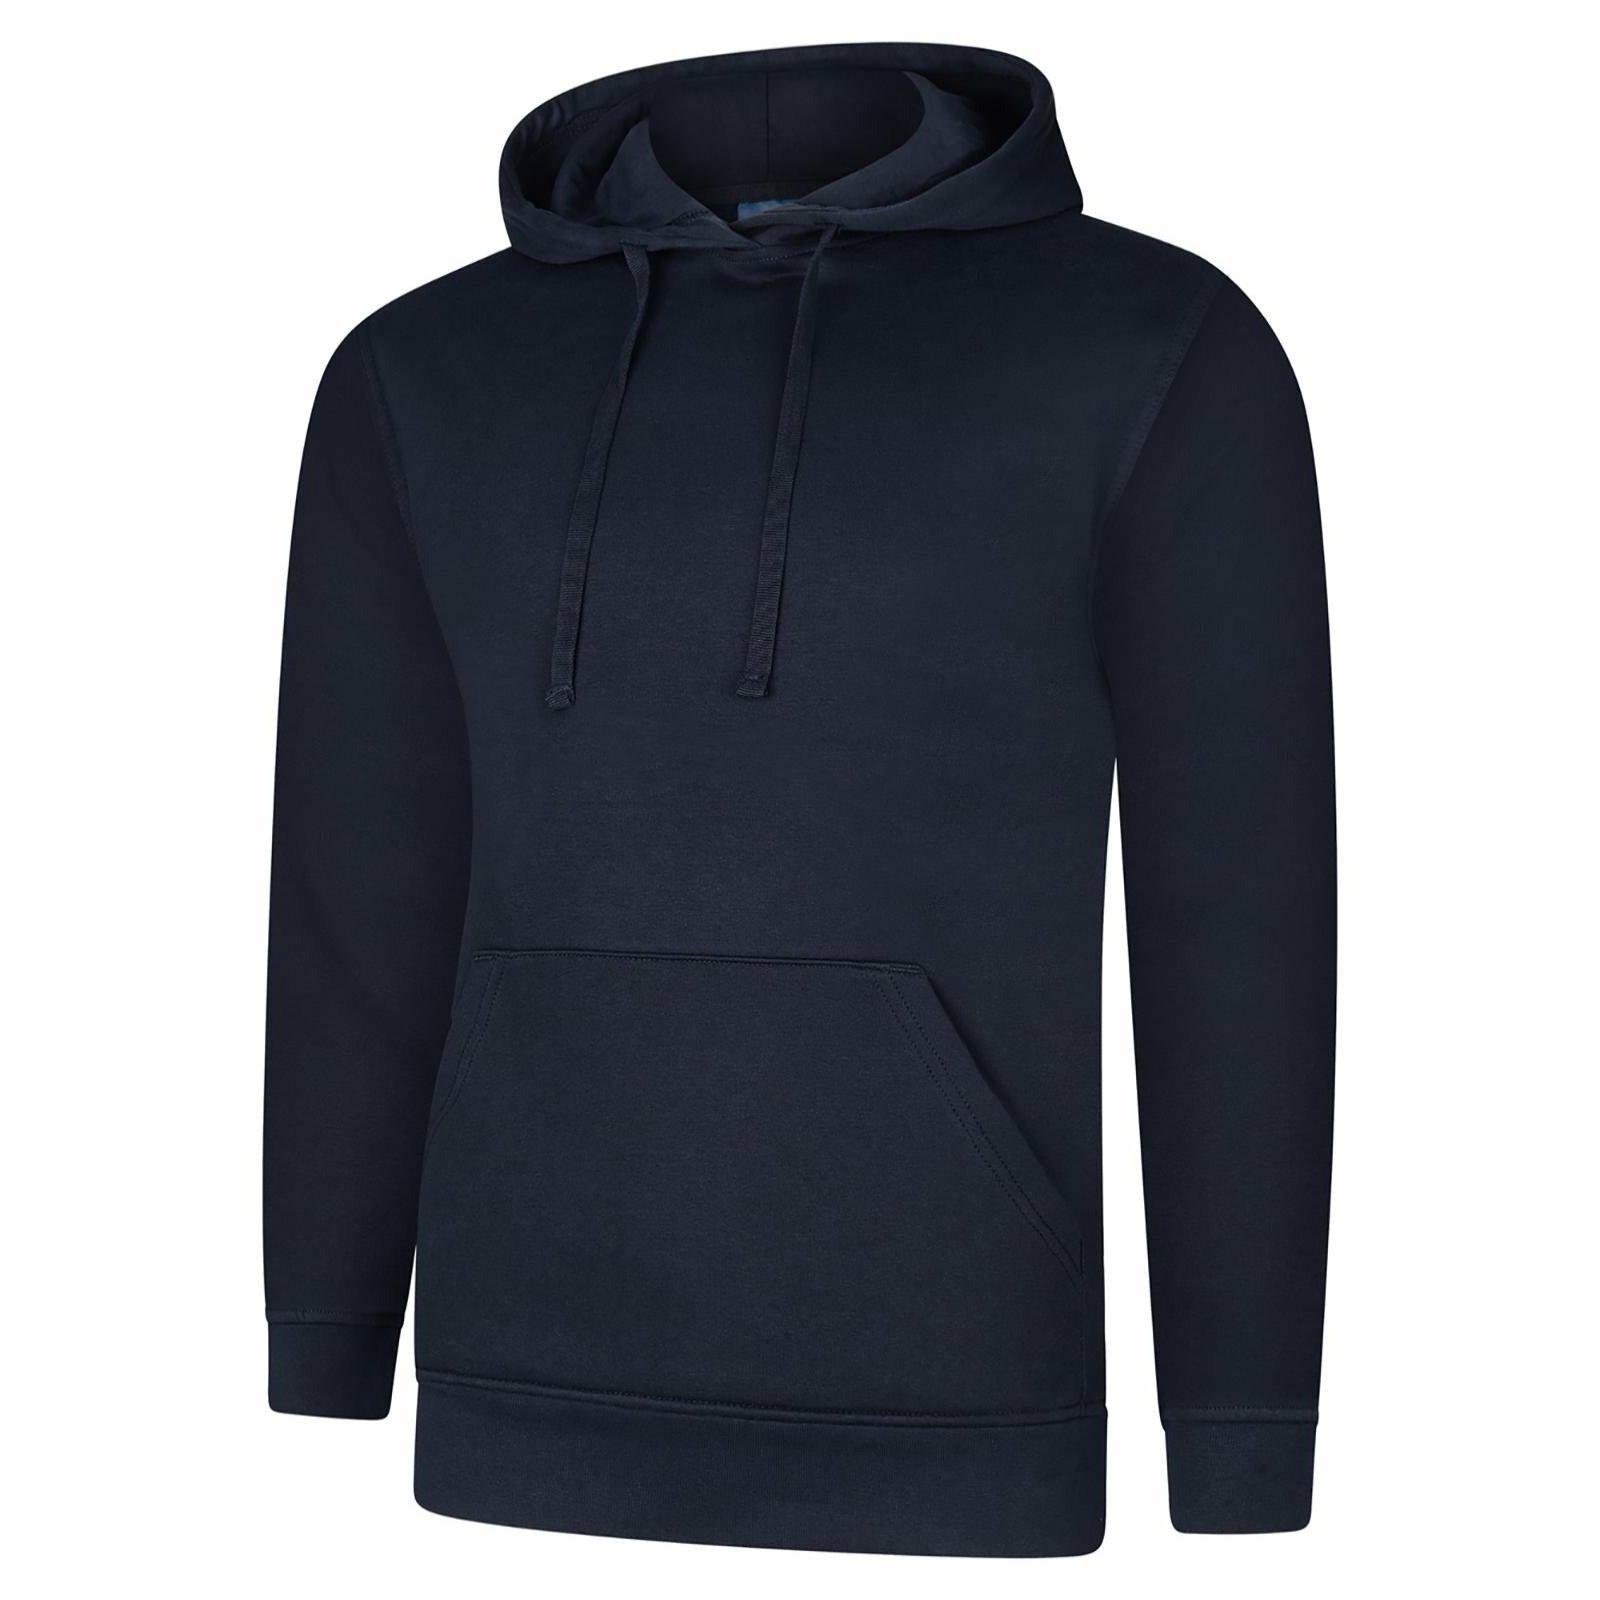 Deluxe Hooded Sweatshirt (XS - M) Navy